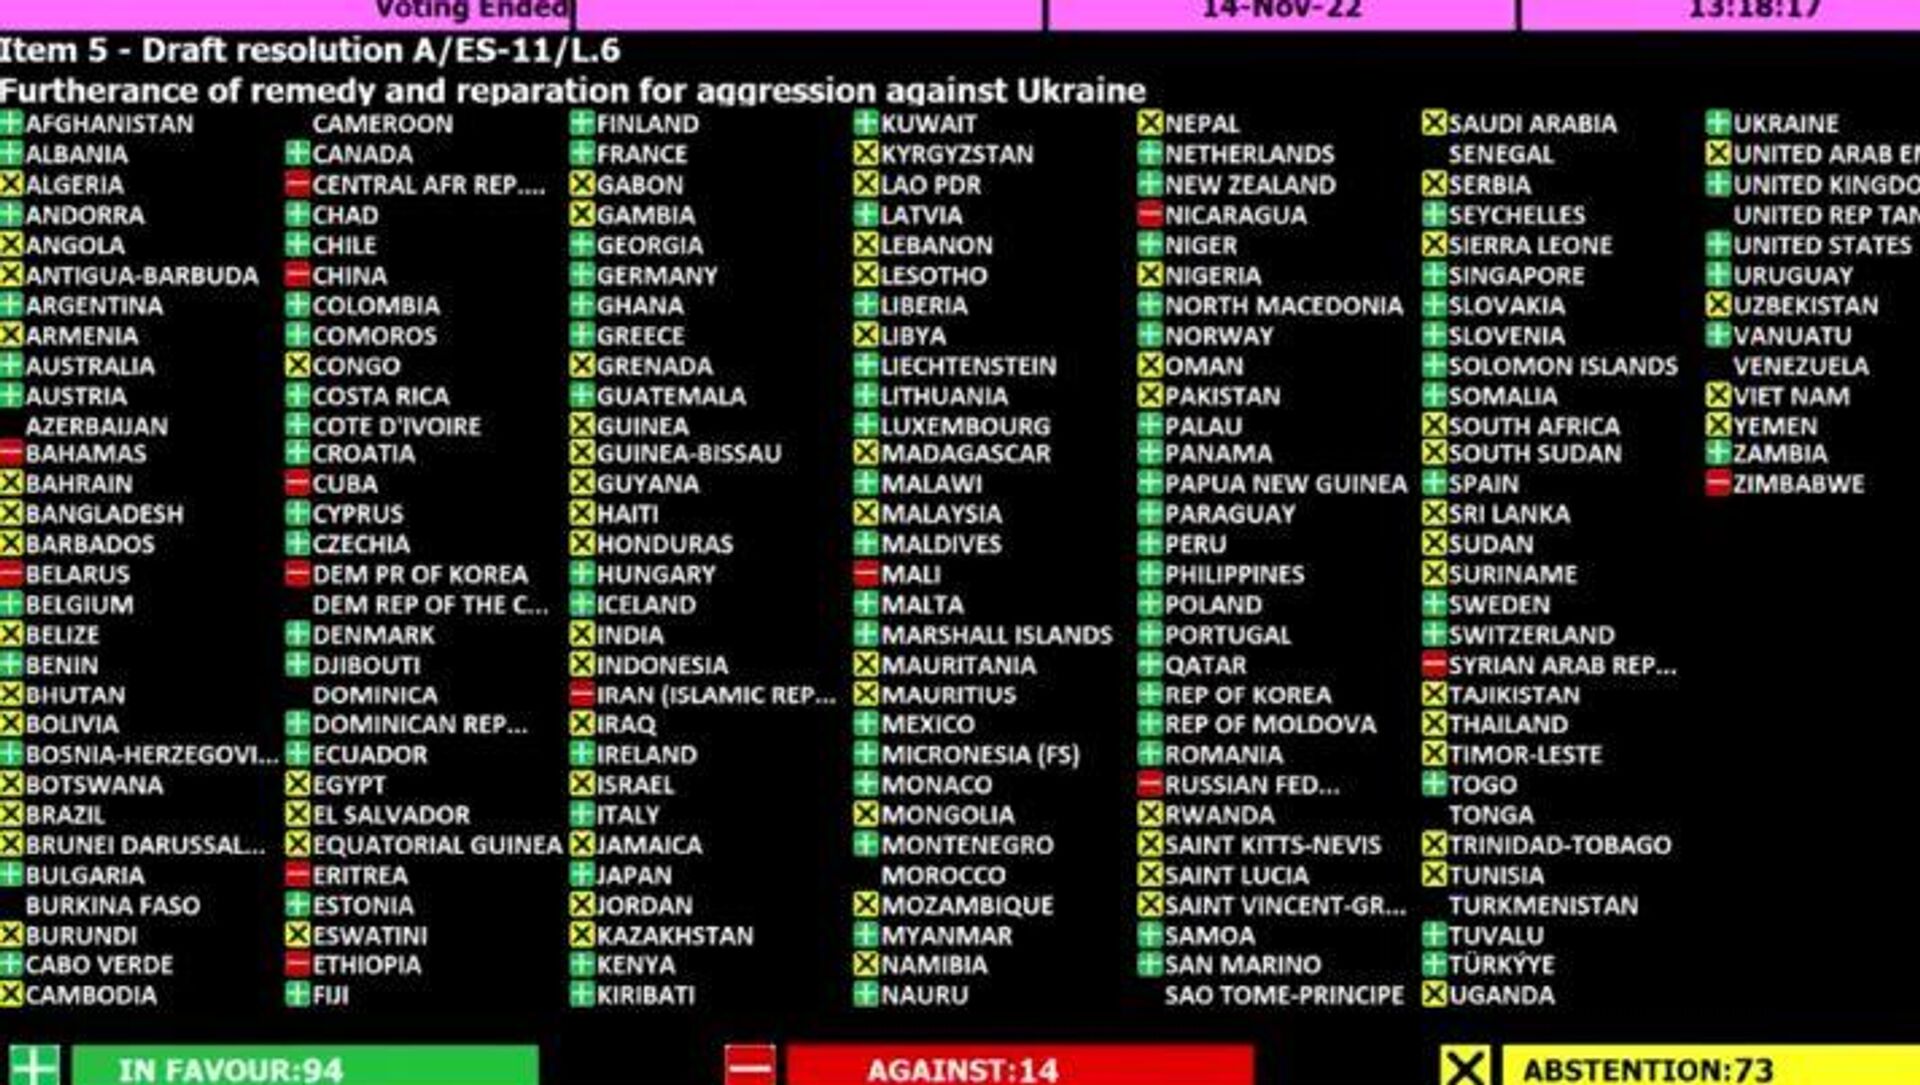 Resultado da votação da Assembleia Geral da ONU contra a Rússia que, segundo especialistas, dá margem para cooptar ativos russos - Sputnik Brasil, 1920, 16.11.2022